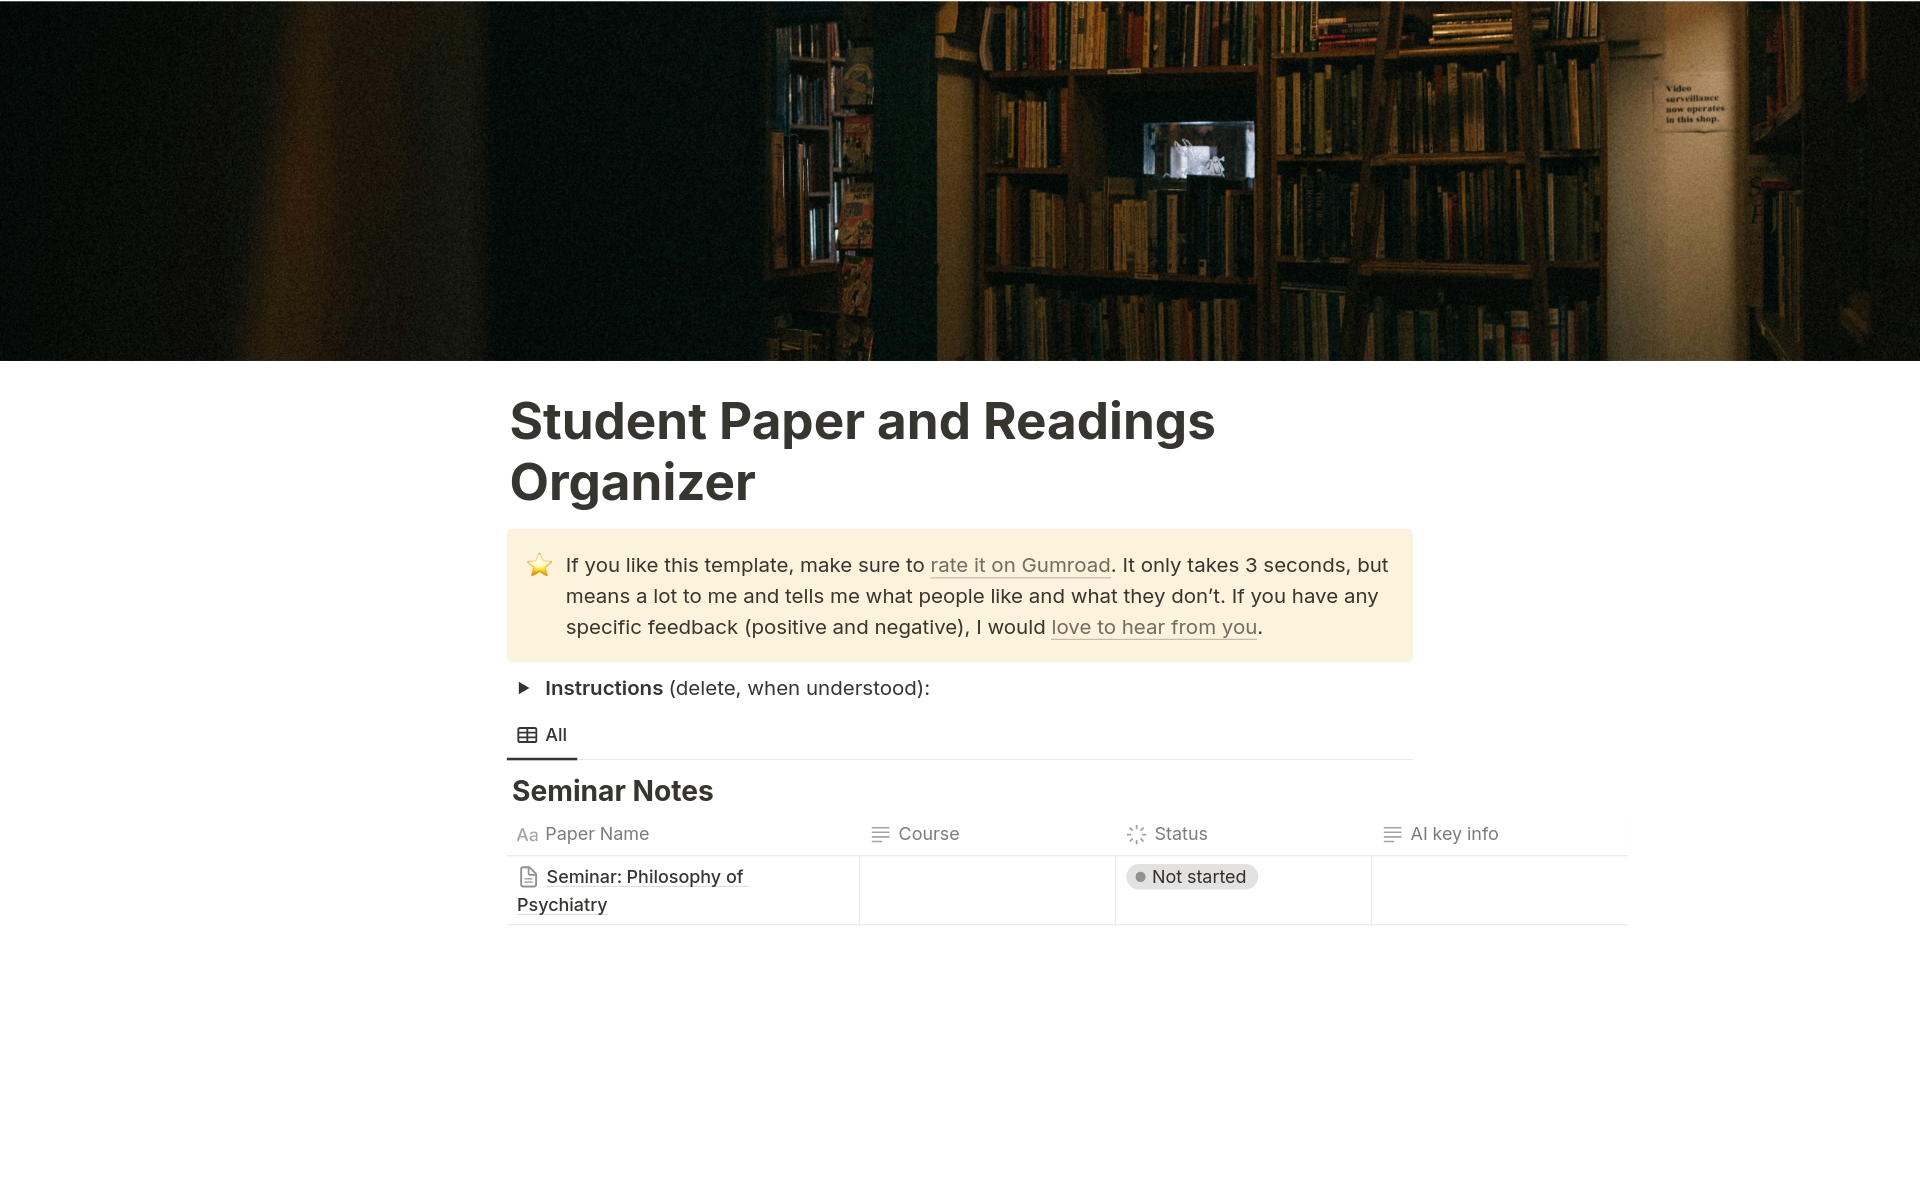 Aperçu du modèle de Student Paper and Readings Organizer